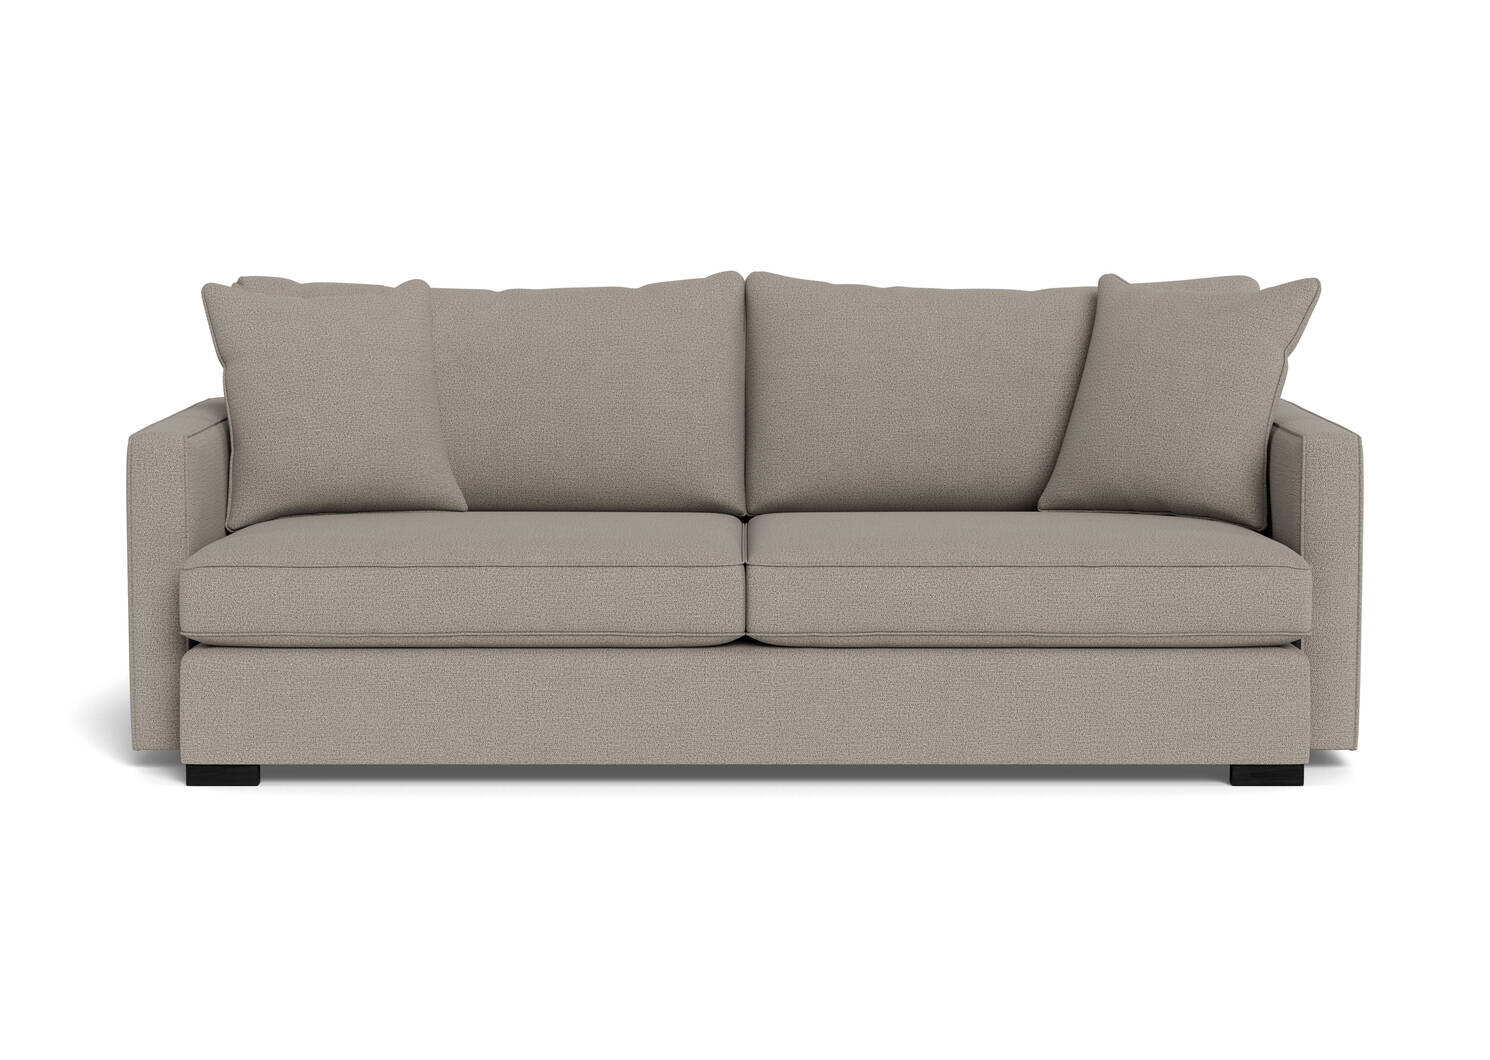 Sibley Custom Sofa